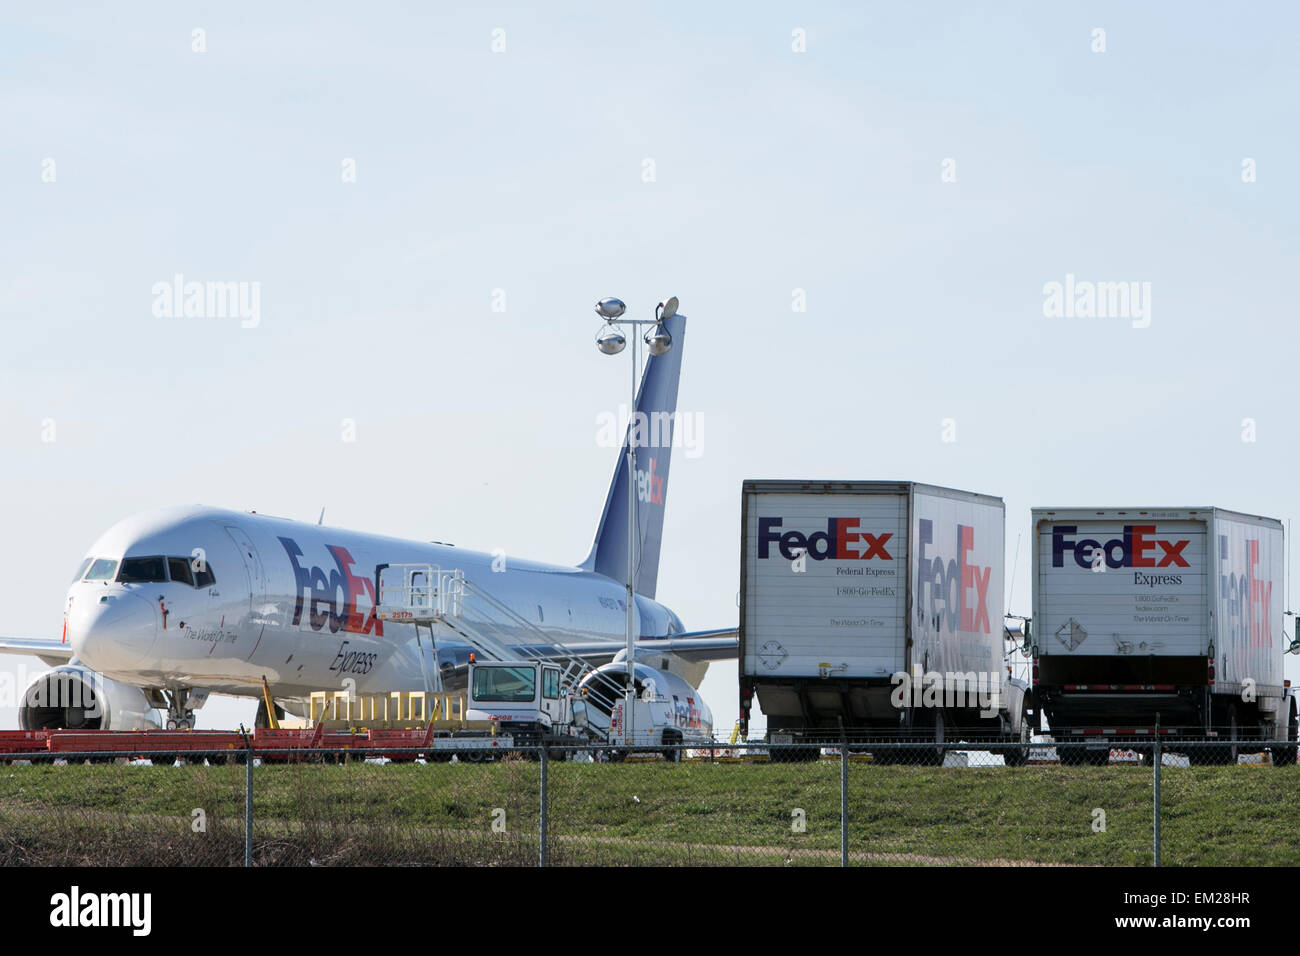 Aviones de carga de FedEx en el Aeropuerto Internacional de Lehigh Valley en Allentown, Pensilvania. Foto de stock